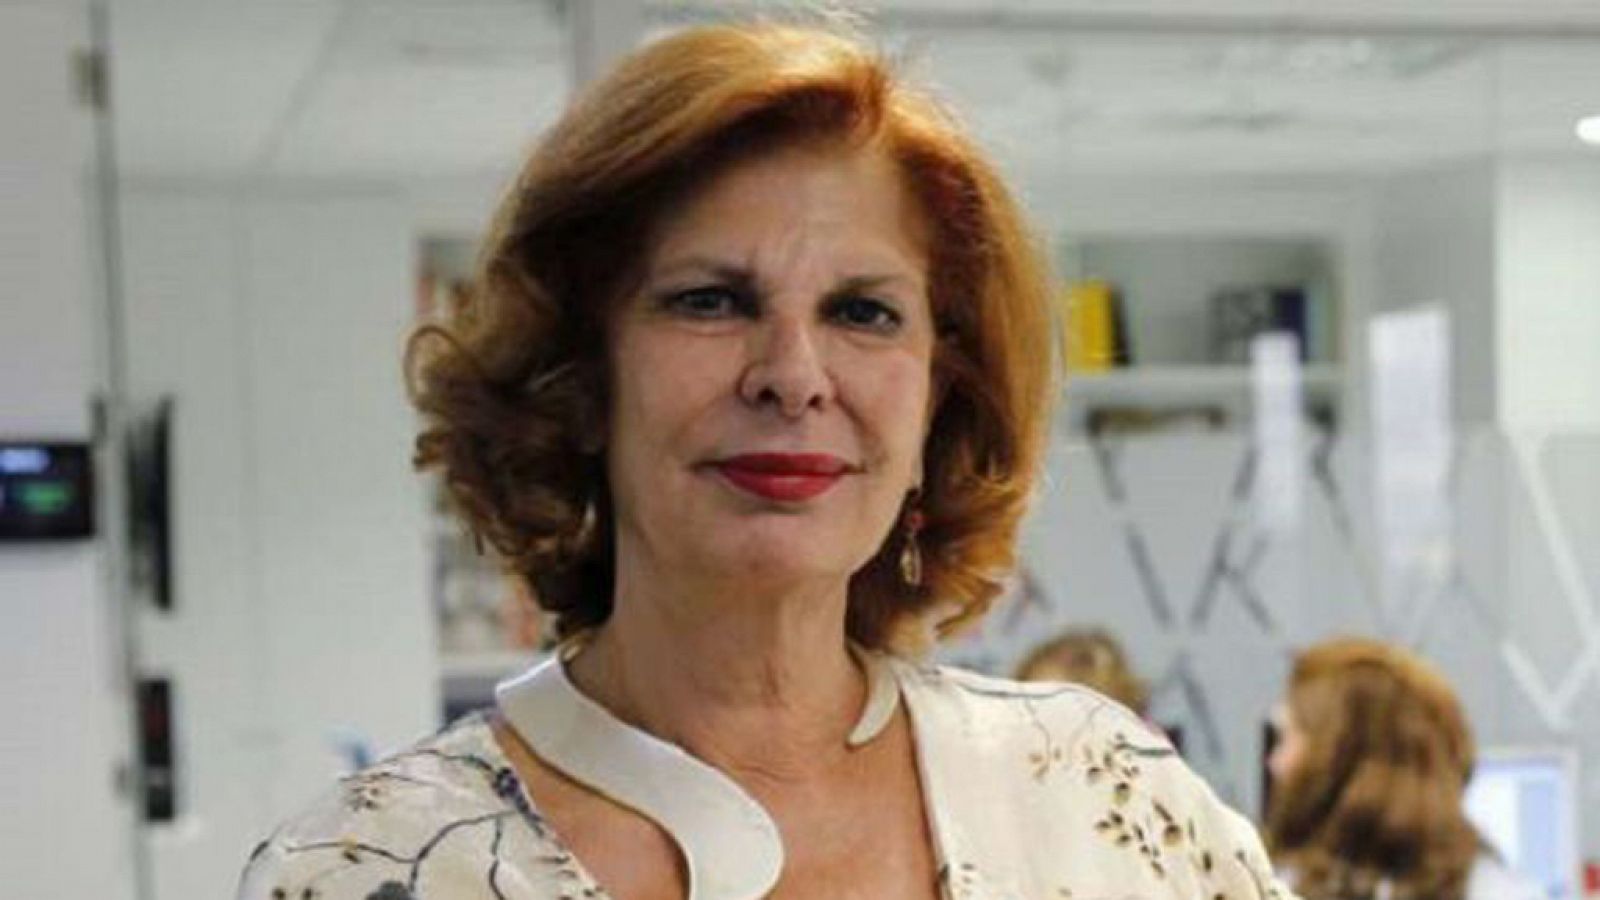 14 horas - Muere la exministra de Cultura Carmen Alborch - Escuchar ahora